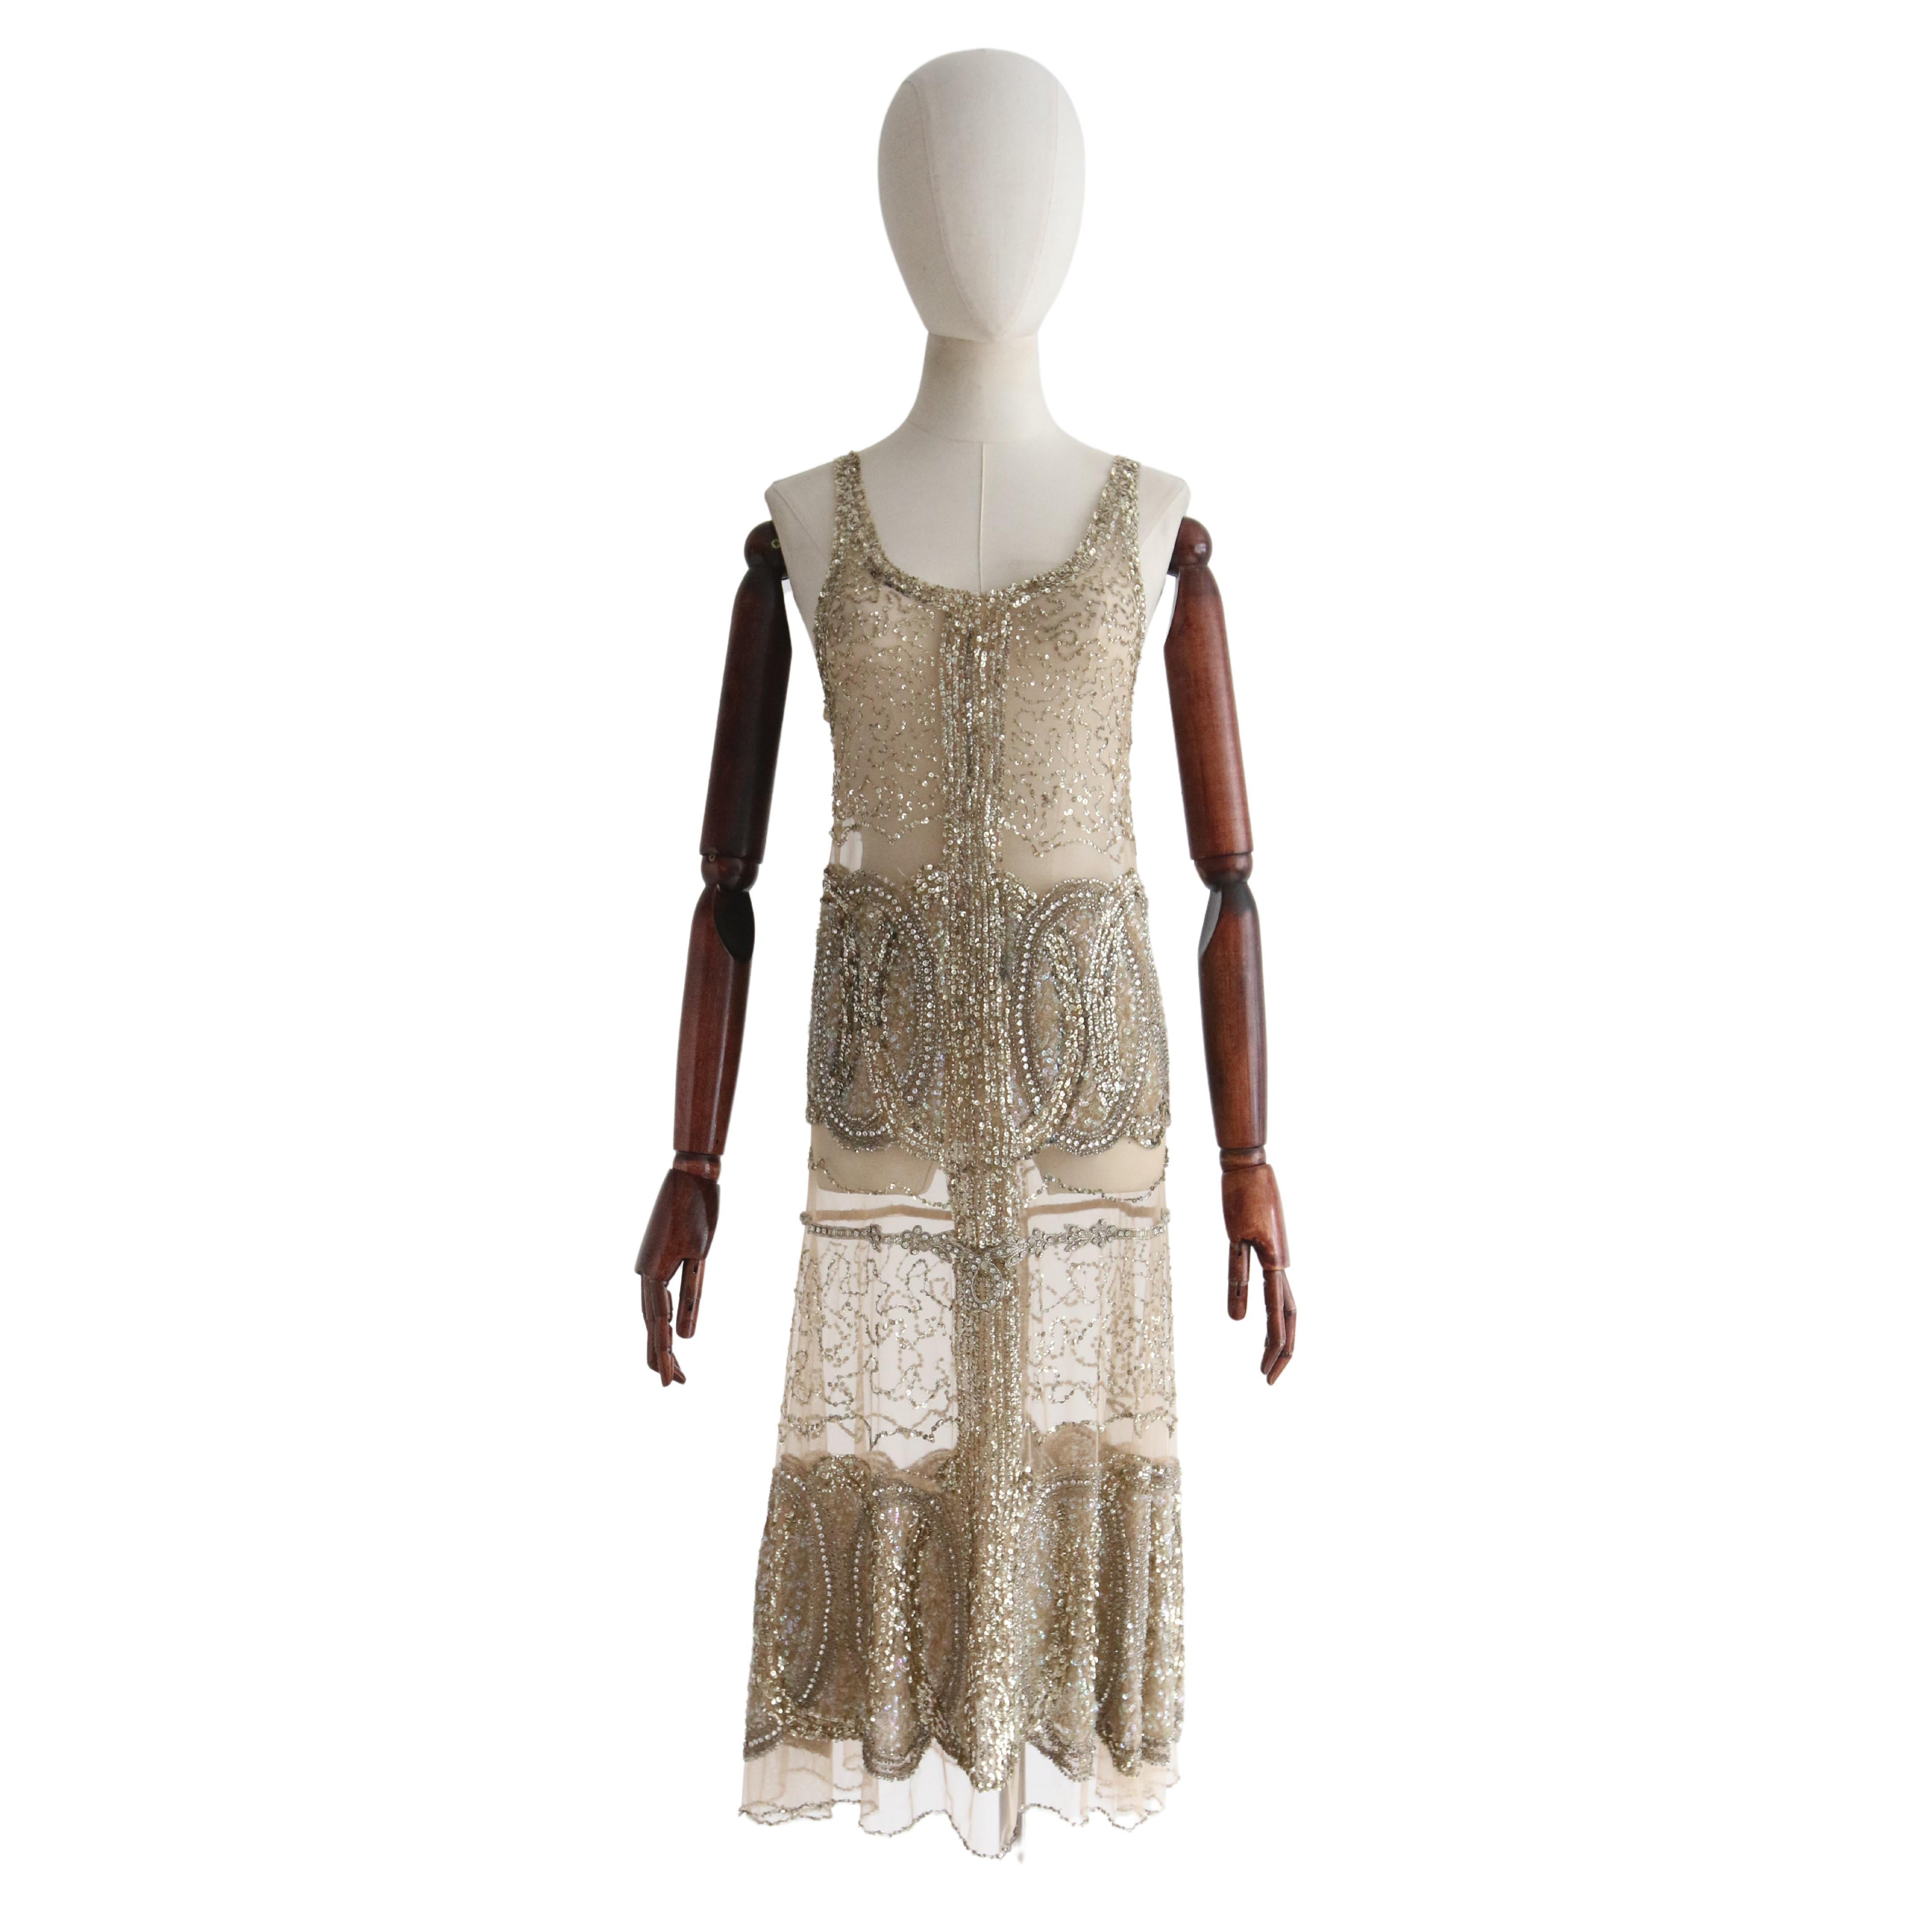 Vintage 1920's Gold Beaded Sequin Dress Flapper Dress UK 6-8 US 2-4 For Sale